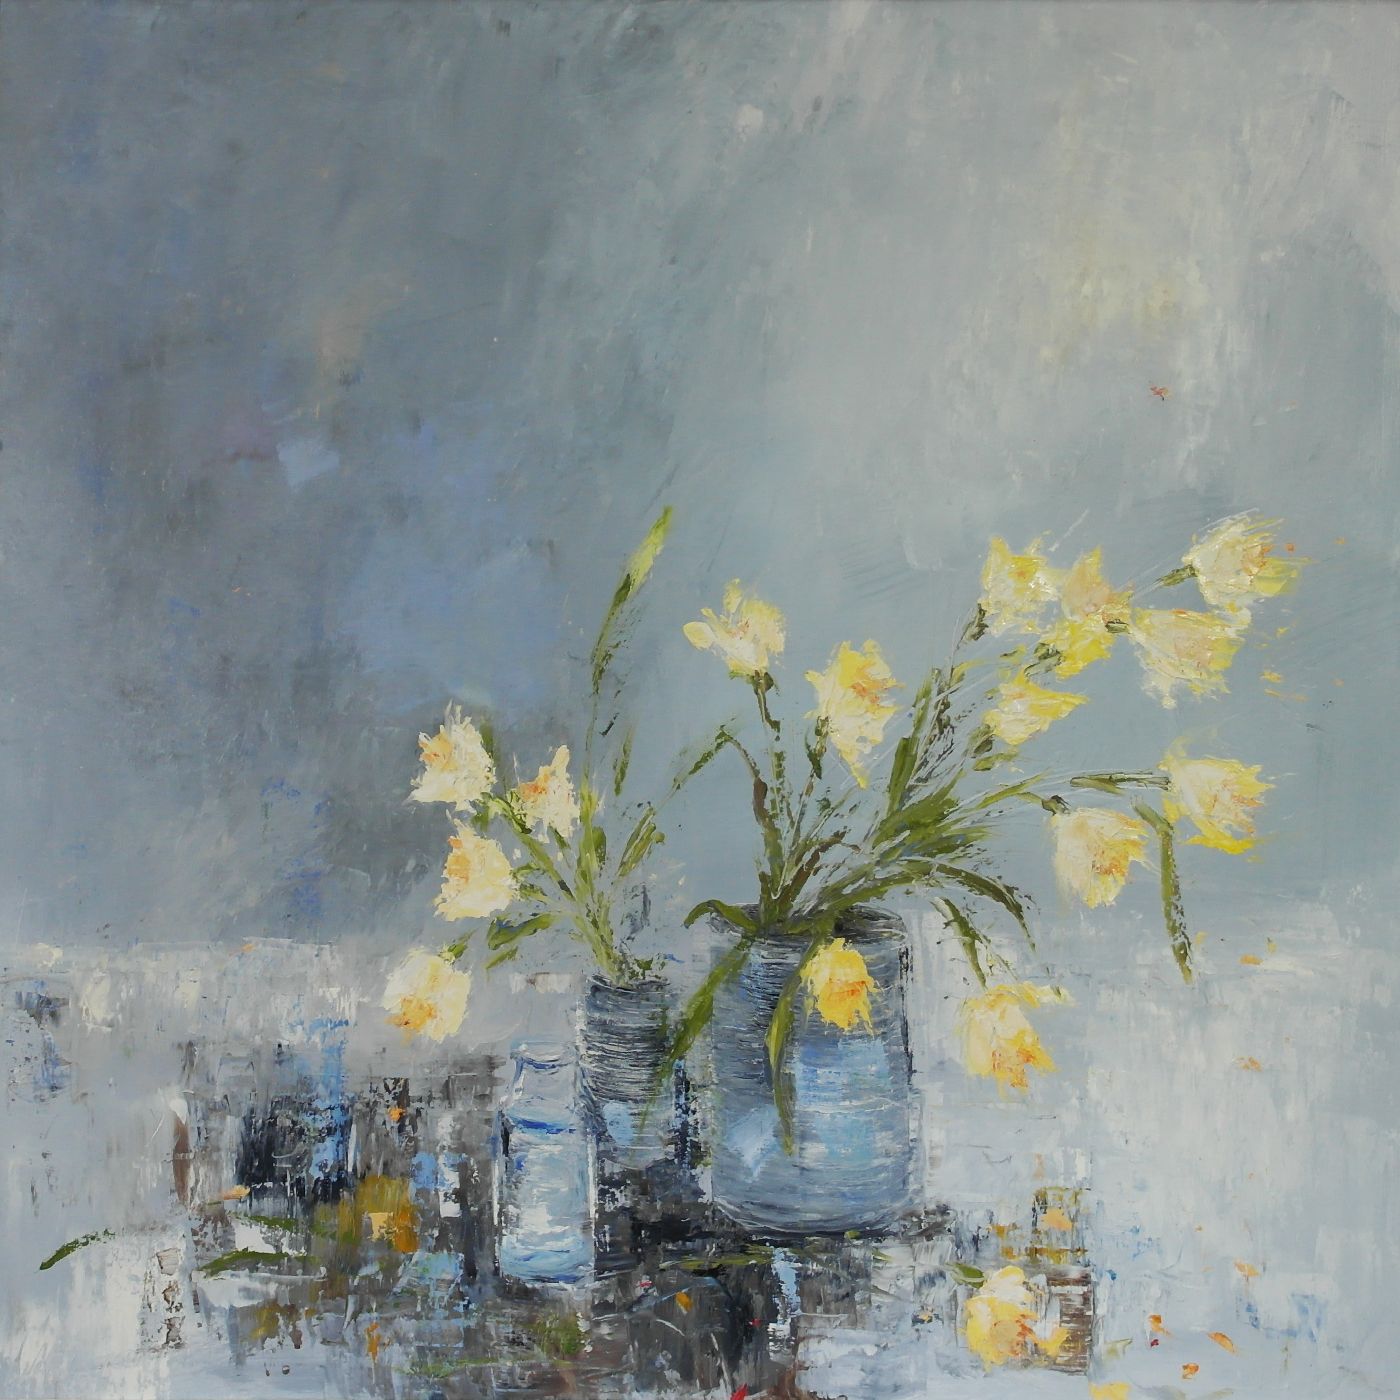 Daffodils in the Studio by Libbi Gooch